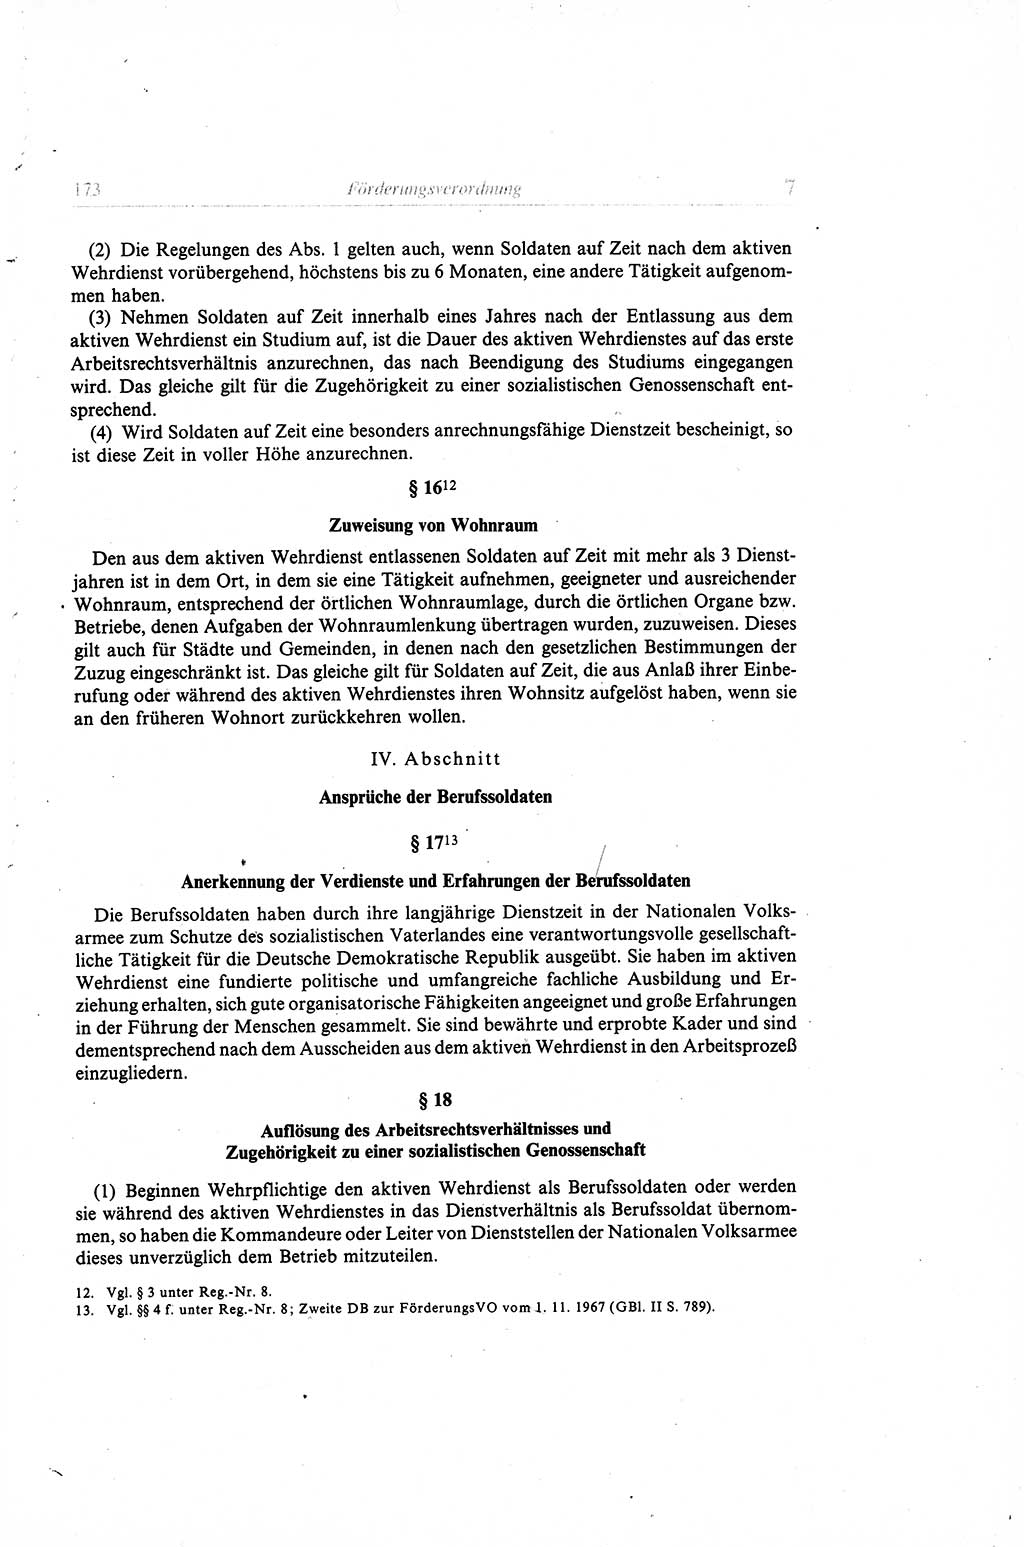 Gesetzbuch der Arbeit (GBA) und andere ausgewählte rechtliche Bestimmungen [Deutsche Demokratische Republik (DDR)] 1968, Seite 173 (GBA DDR 1968, S. 173)